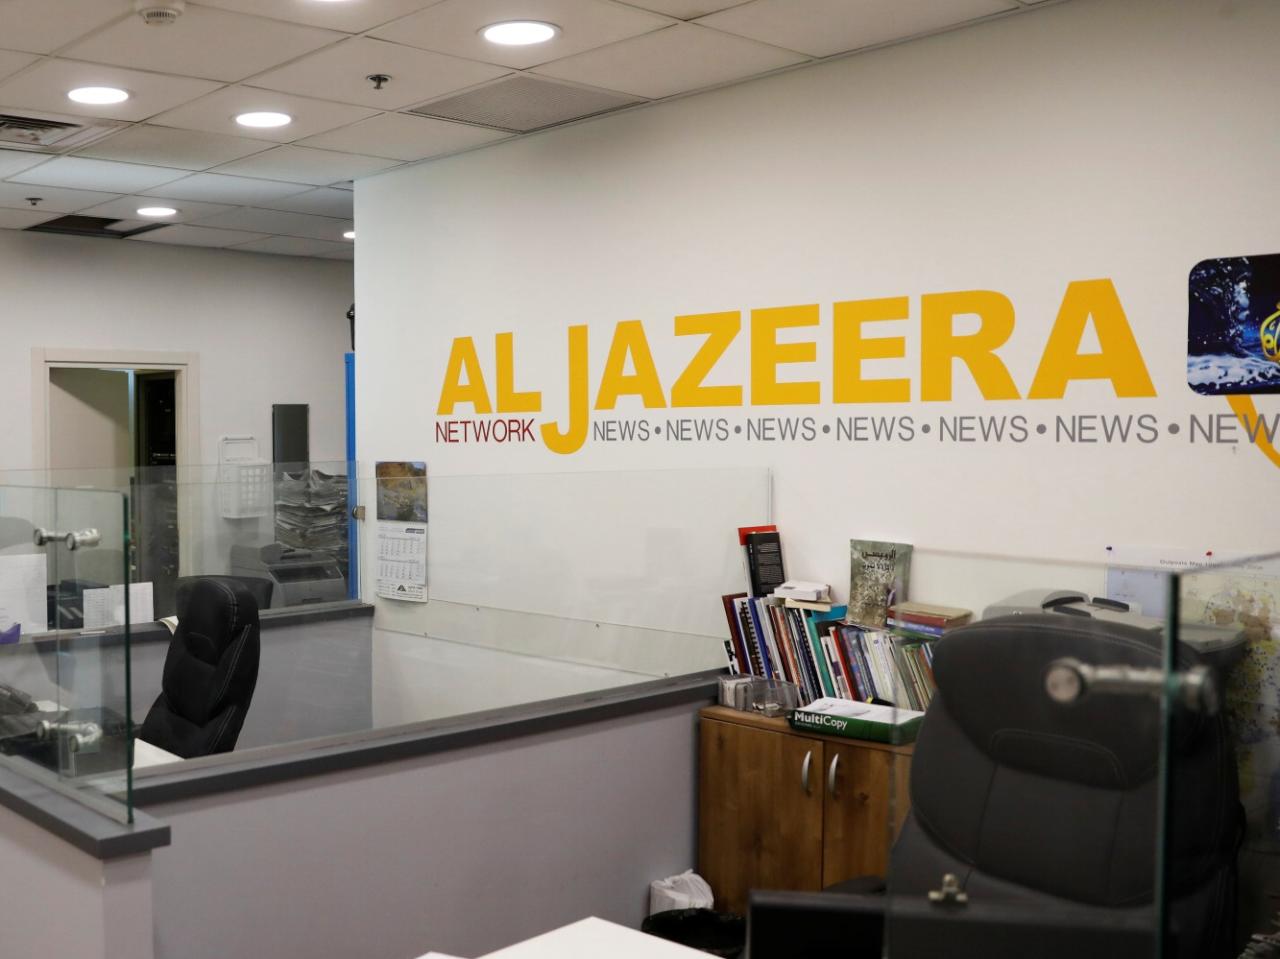 إسرائيل تقرر إغلاق "مكاتب الجزيرة" أسوة بدول سنية خليجية